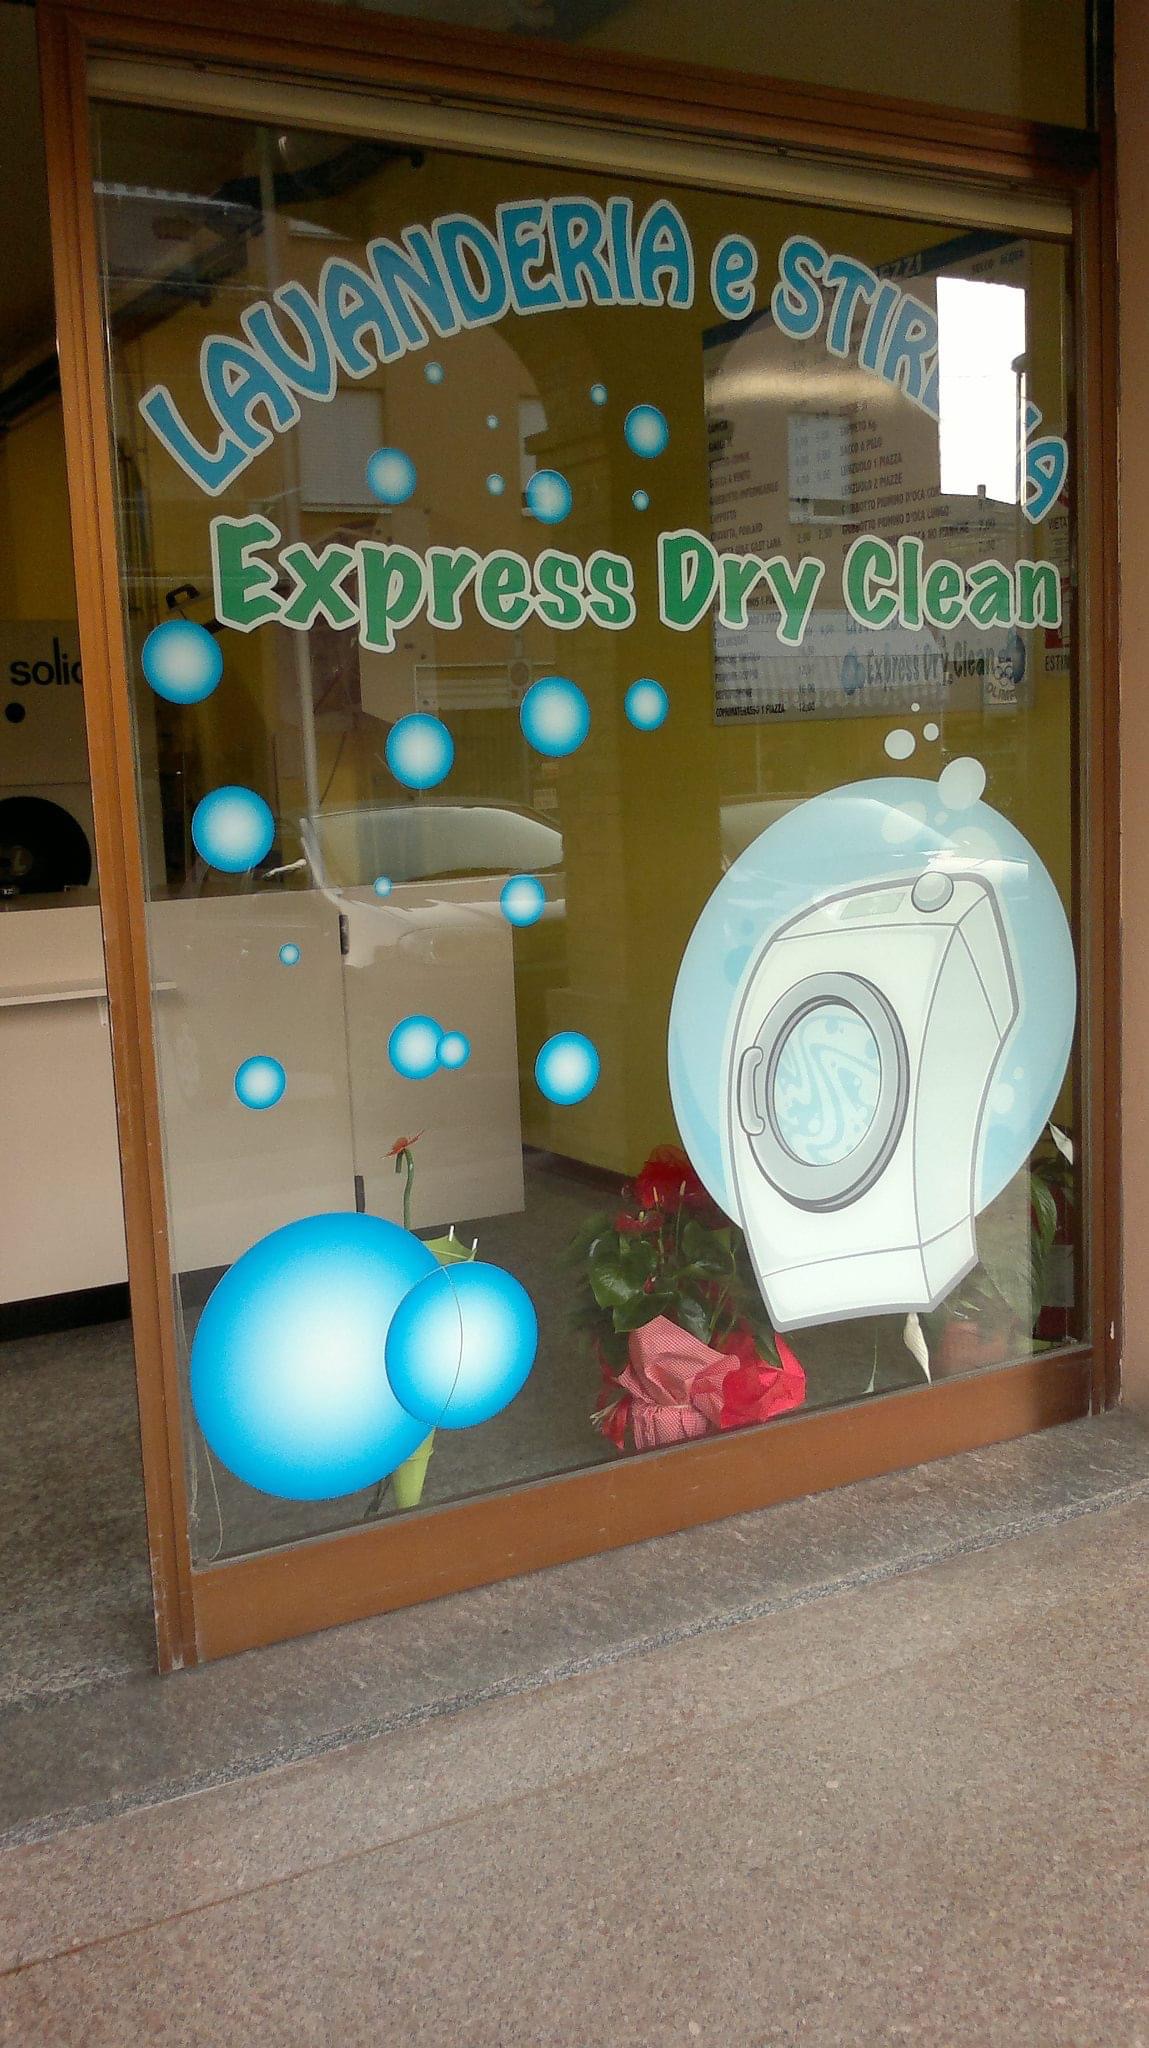 Lavanderia express dry clean